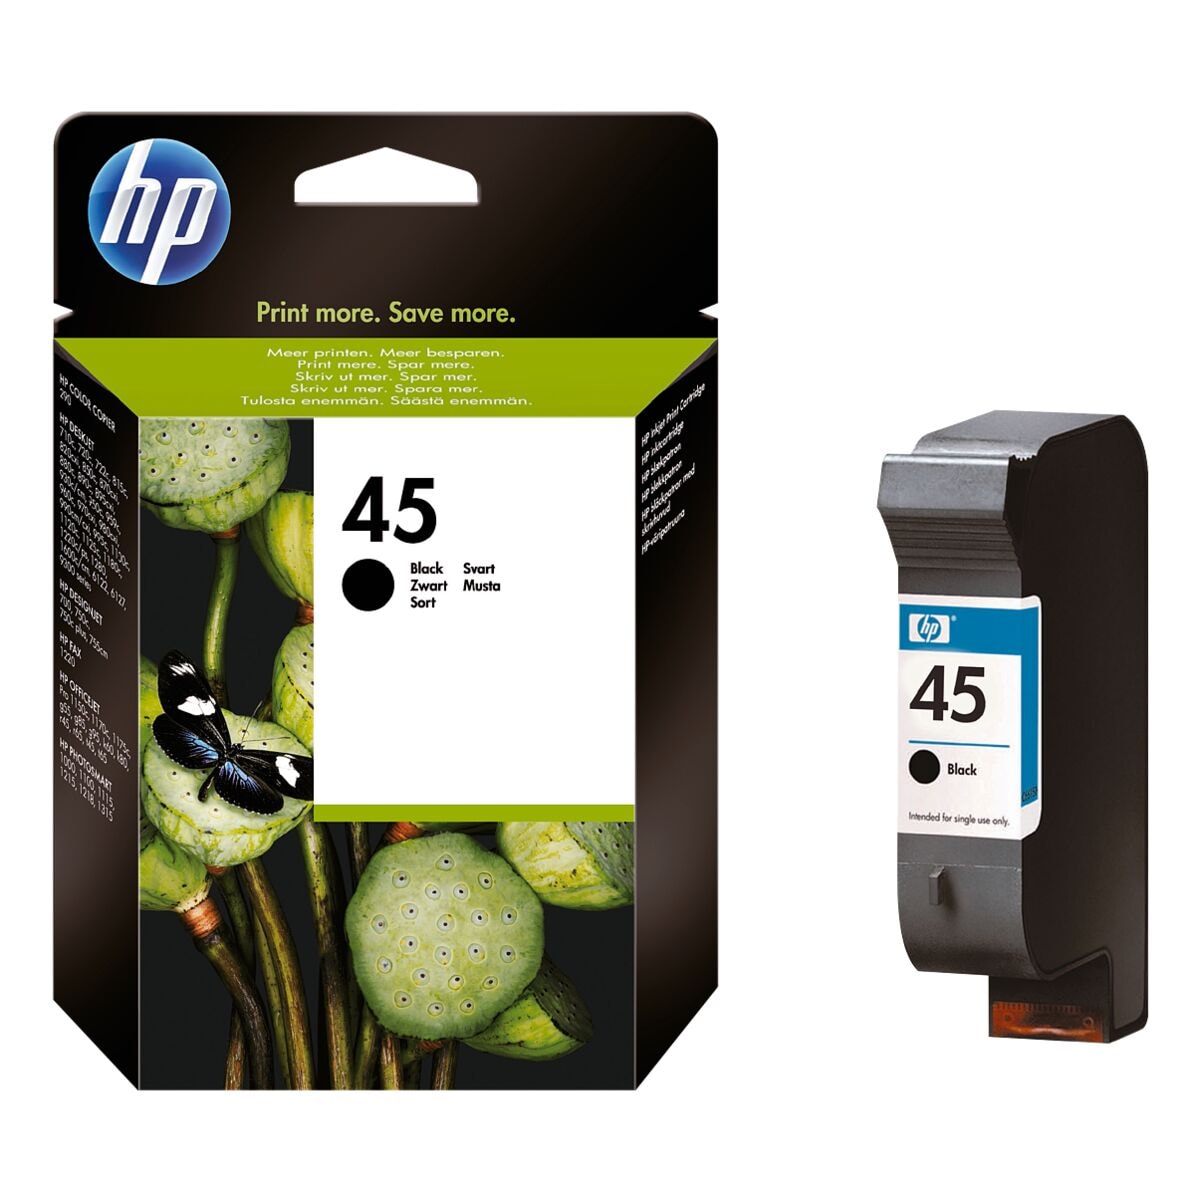 HP Tintenpatrone HP 45, schwarz - HP 51645AE